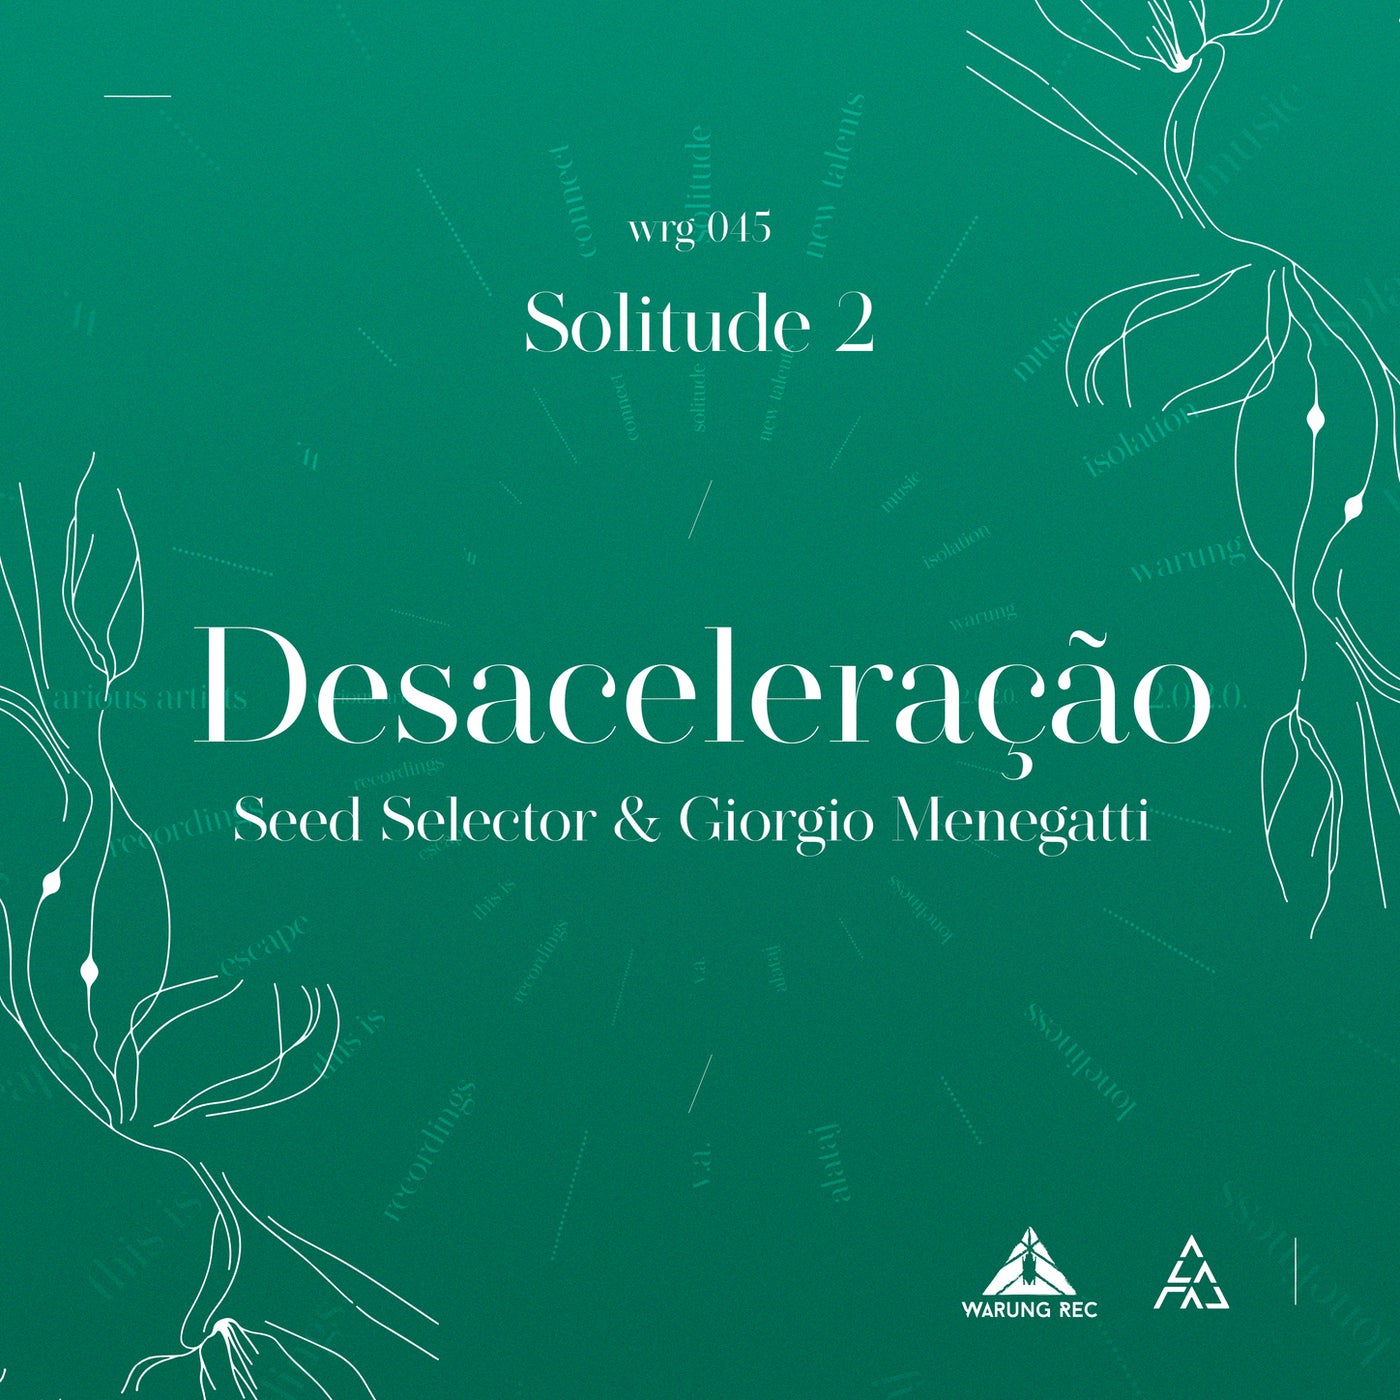 image cover: Seed Selector, Giorgio Menegatti, Seed Selector, Giorgio Menegatti - Desaceleração / WRG045